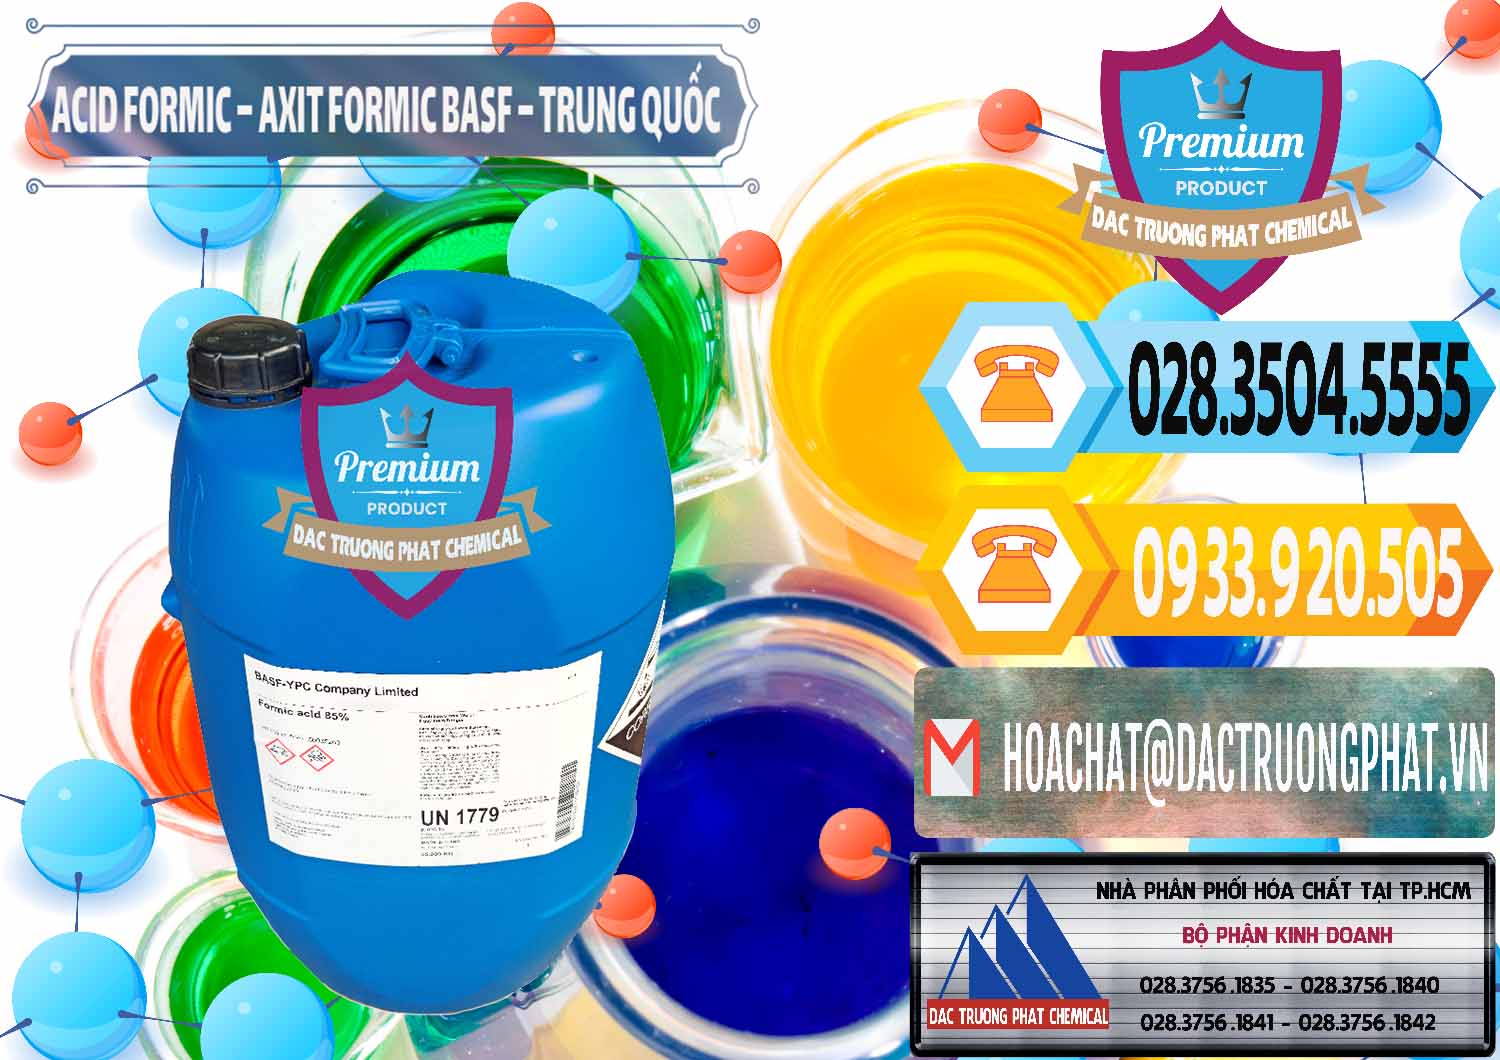 Đơn vị chuyên cung cấp _ bán Acid Formic - Axit Formic BASF Trung Quốc China - 0025 - Nơi chuyên bán và cung cấp hóa chất tại TP.HCM - hoachattayrua.net